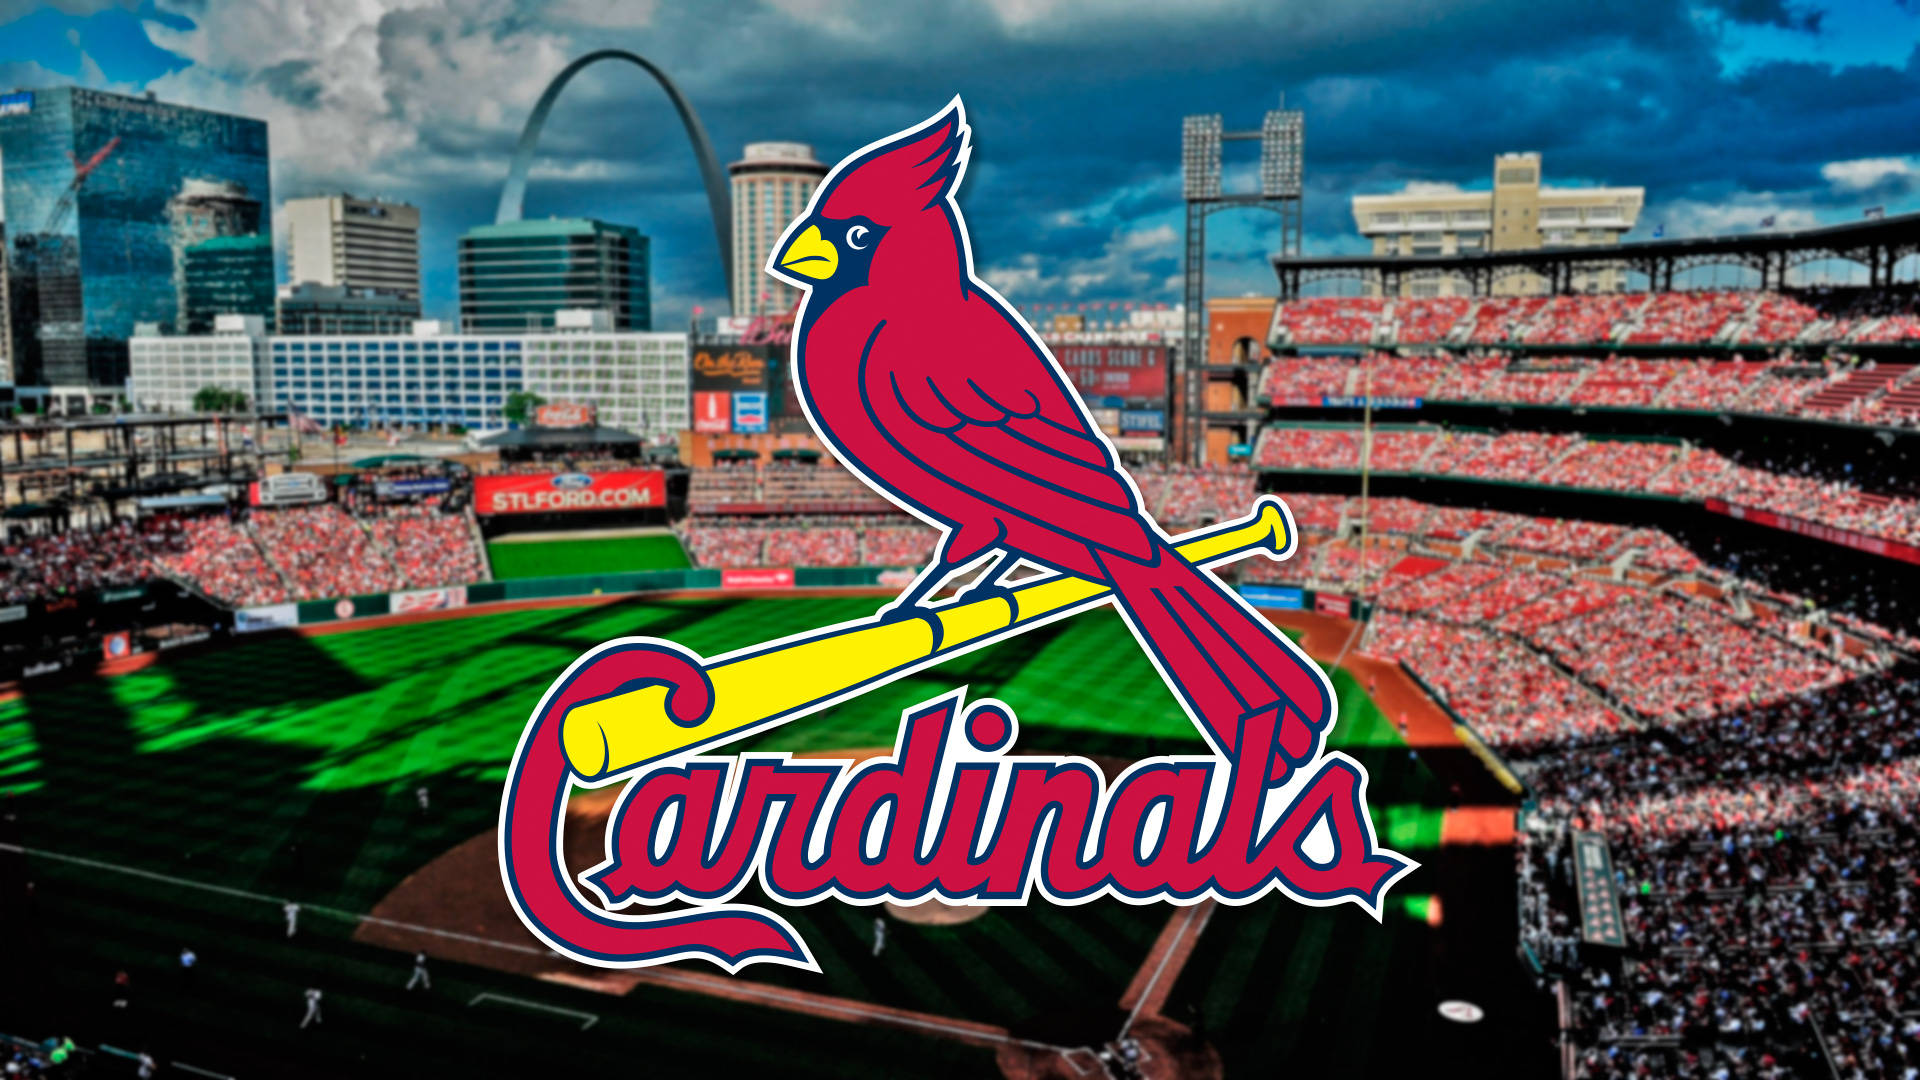 St Louis Cardinals Red Bird On Field Wallpaper